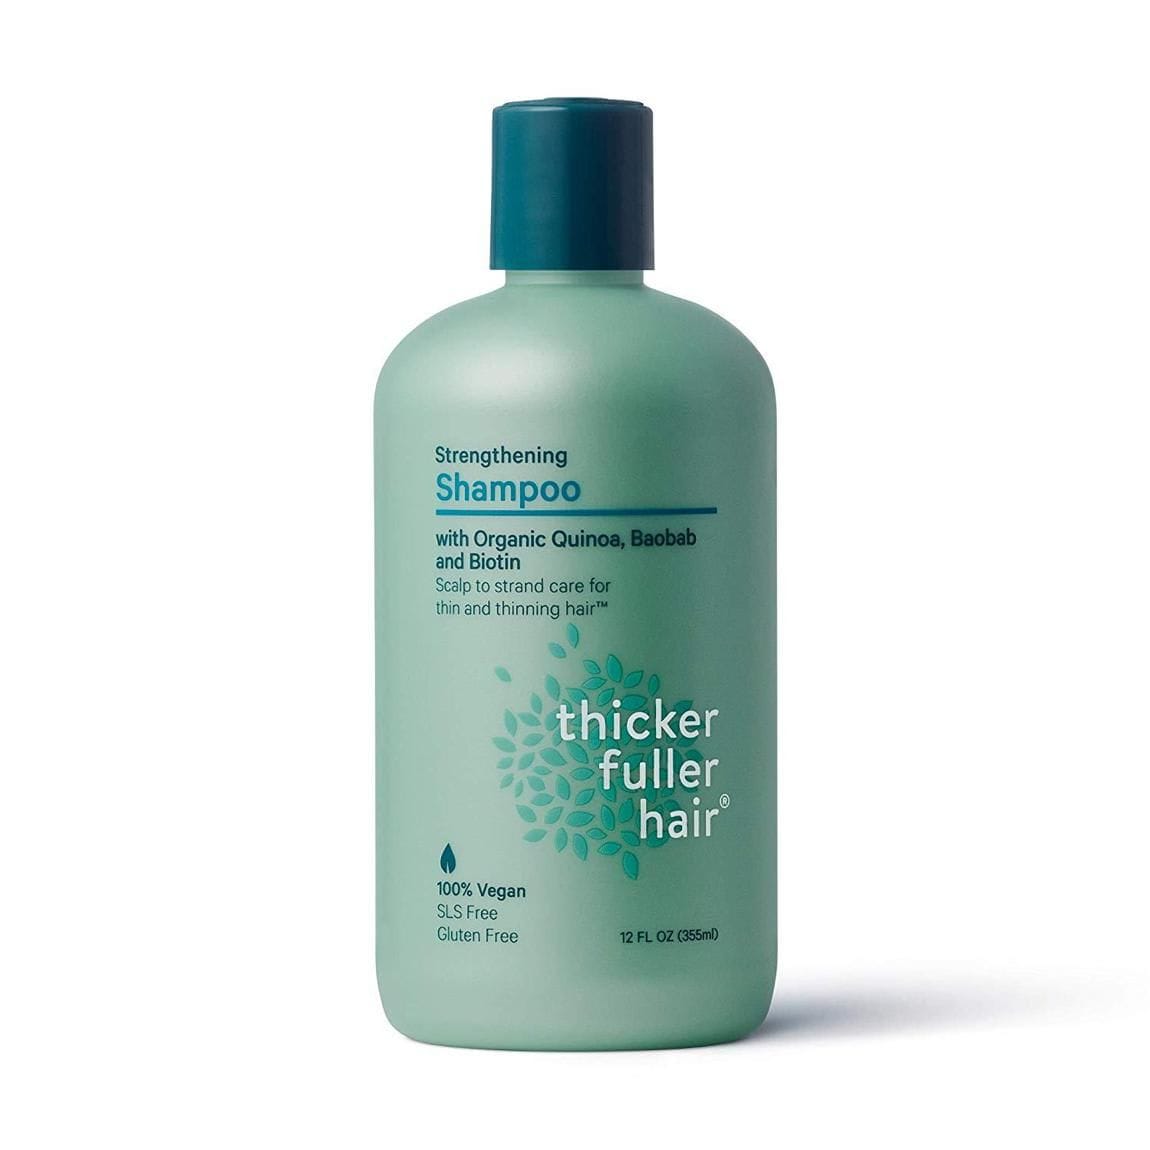 Strengthening Shampoo de Thicker Fuller Hair